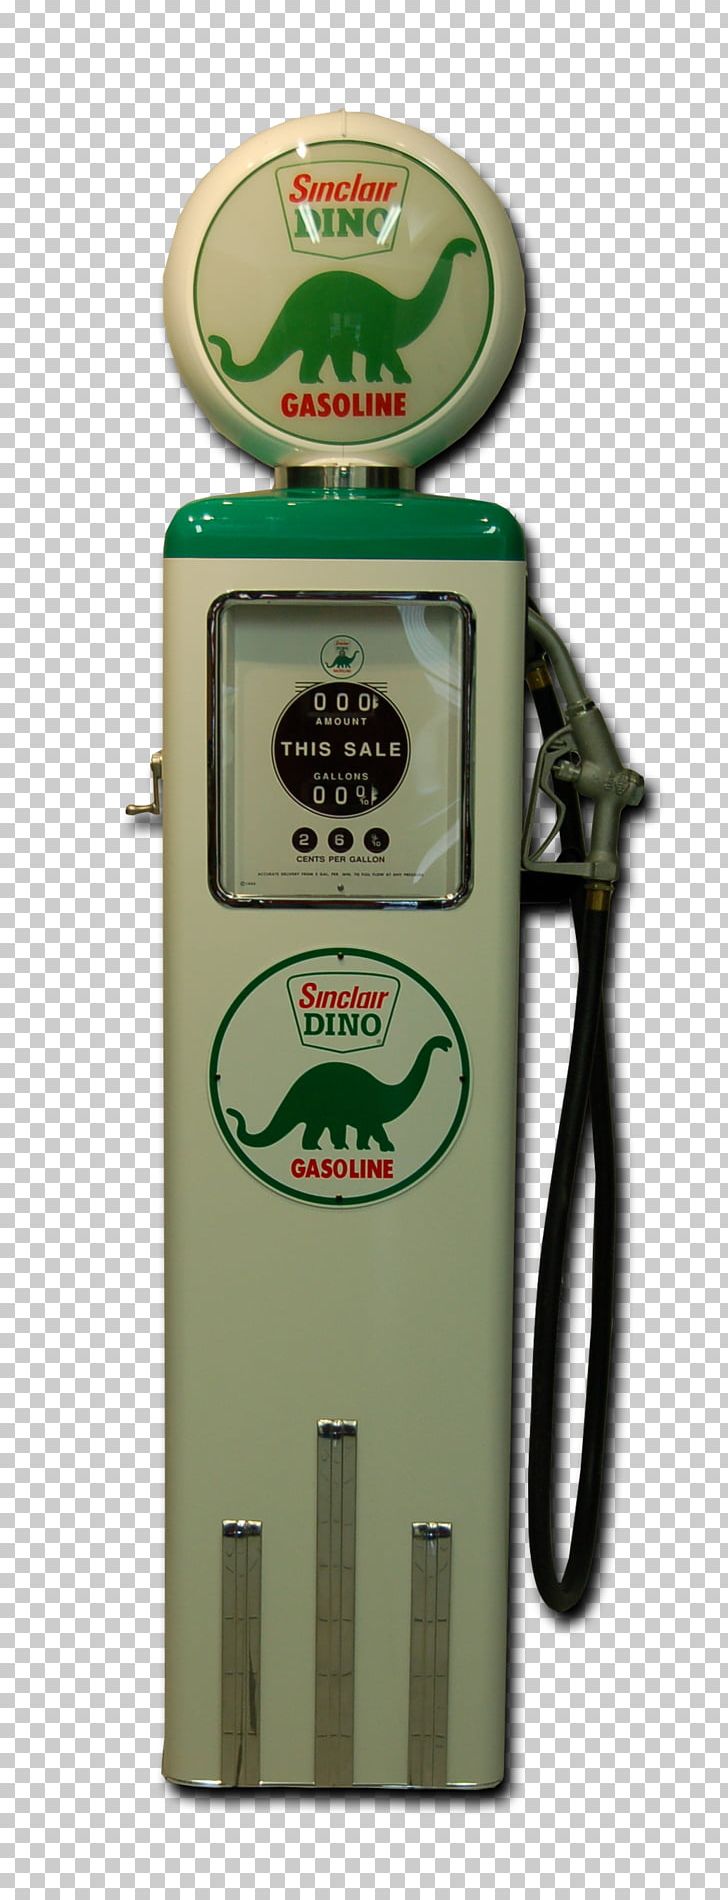 Fuel Dispenser Fuel Pump Oil Pump Tokheim PNG, Clipart, Electric Ball, Fuel, Fuel Dispenser, Fuel Pump, Gas Pump Free PNG Download